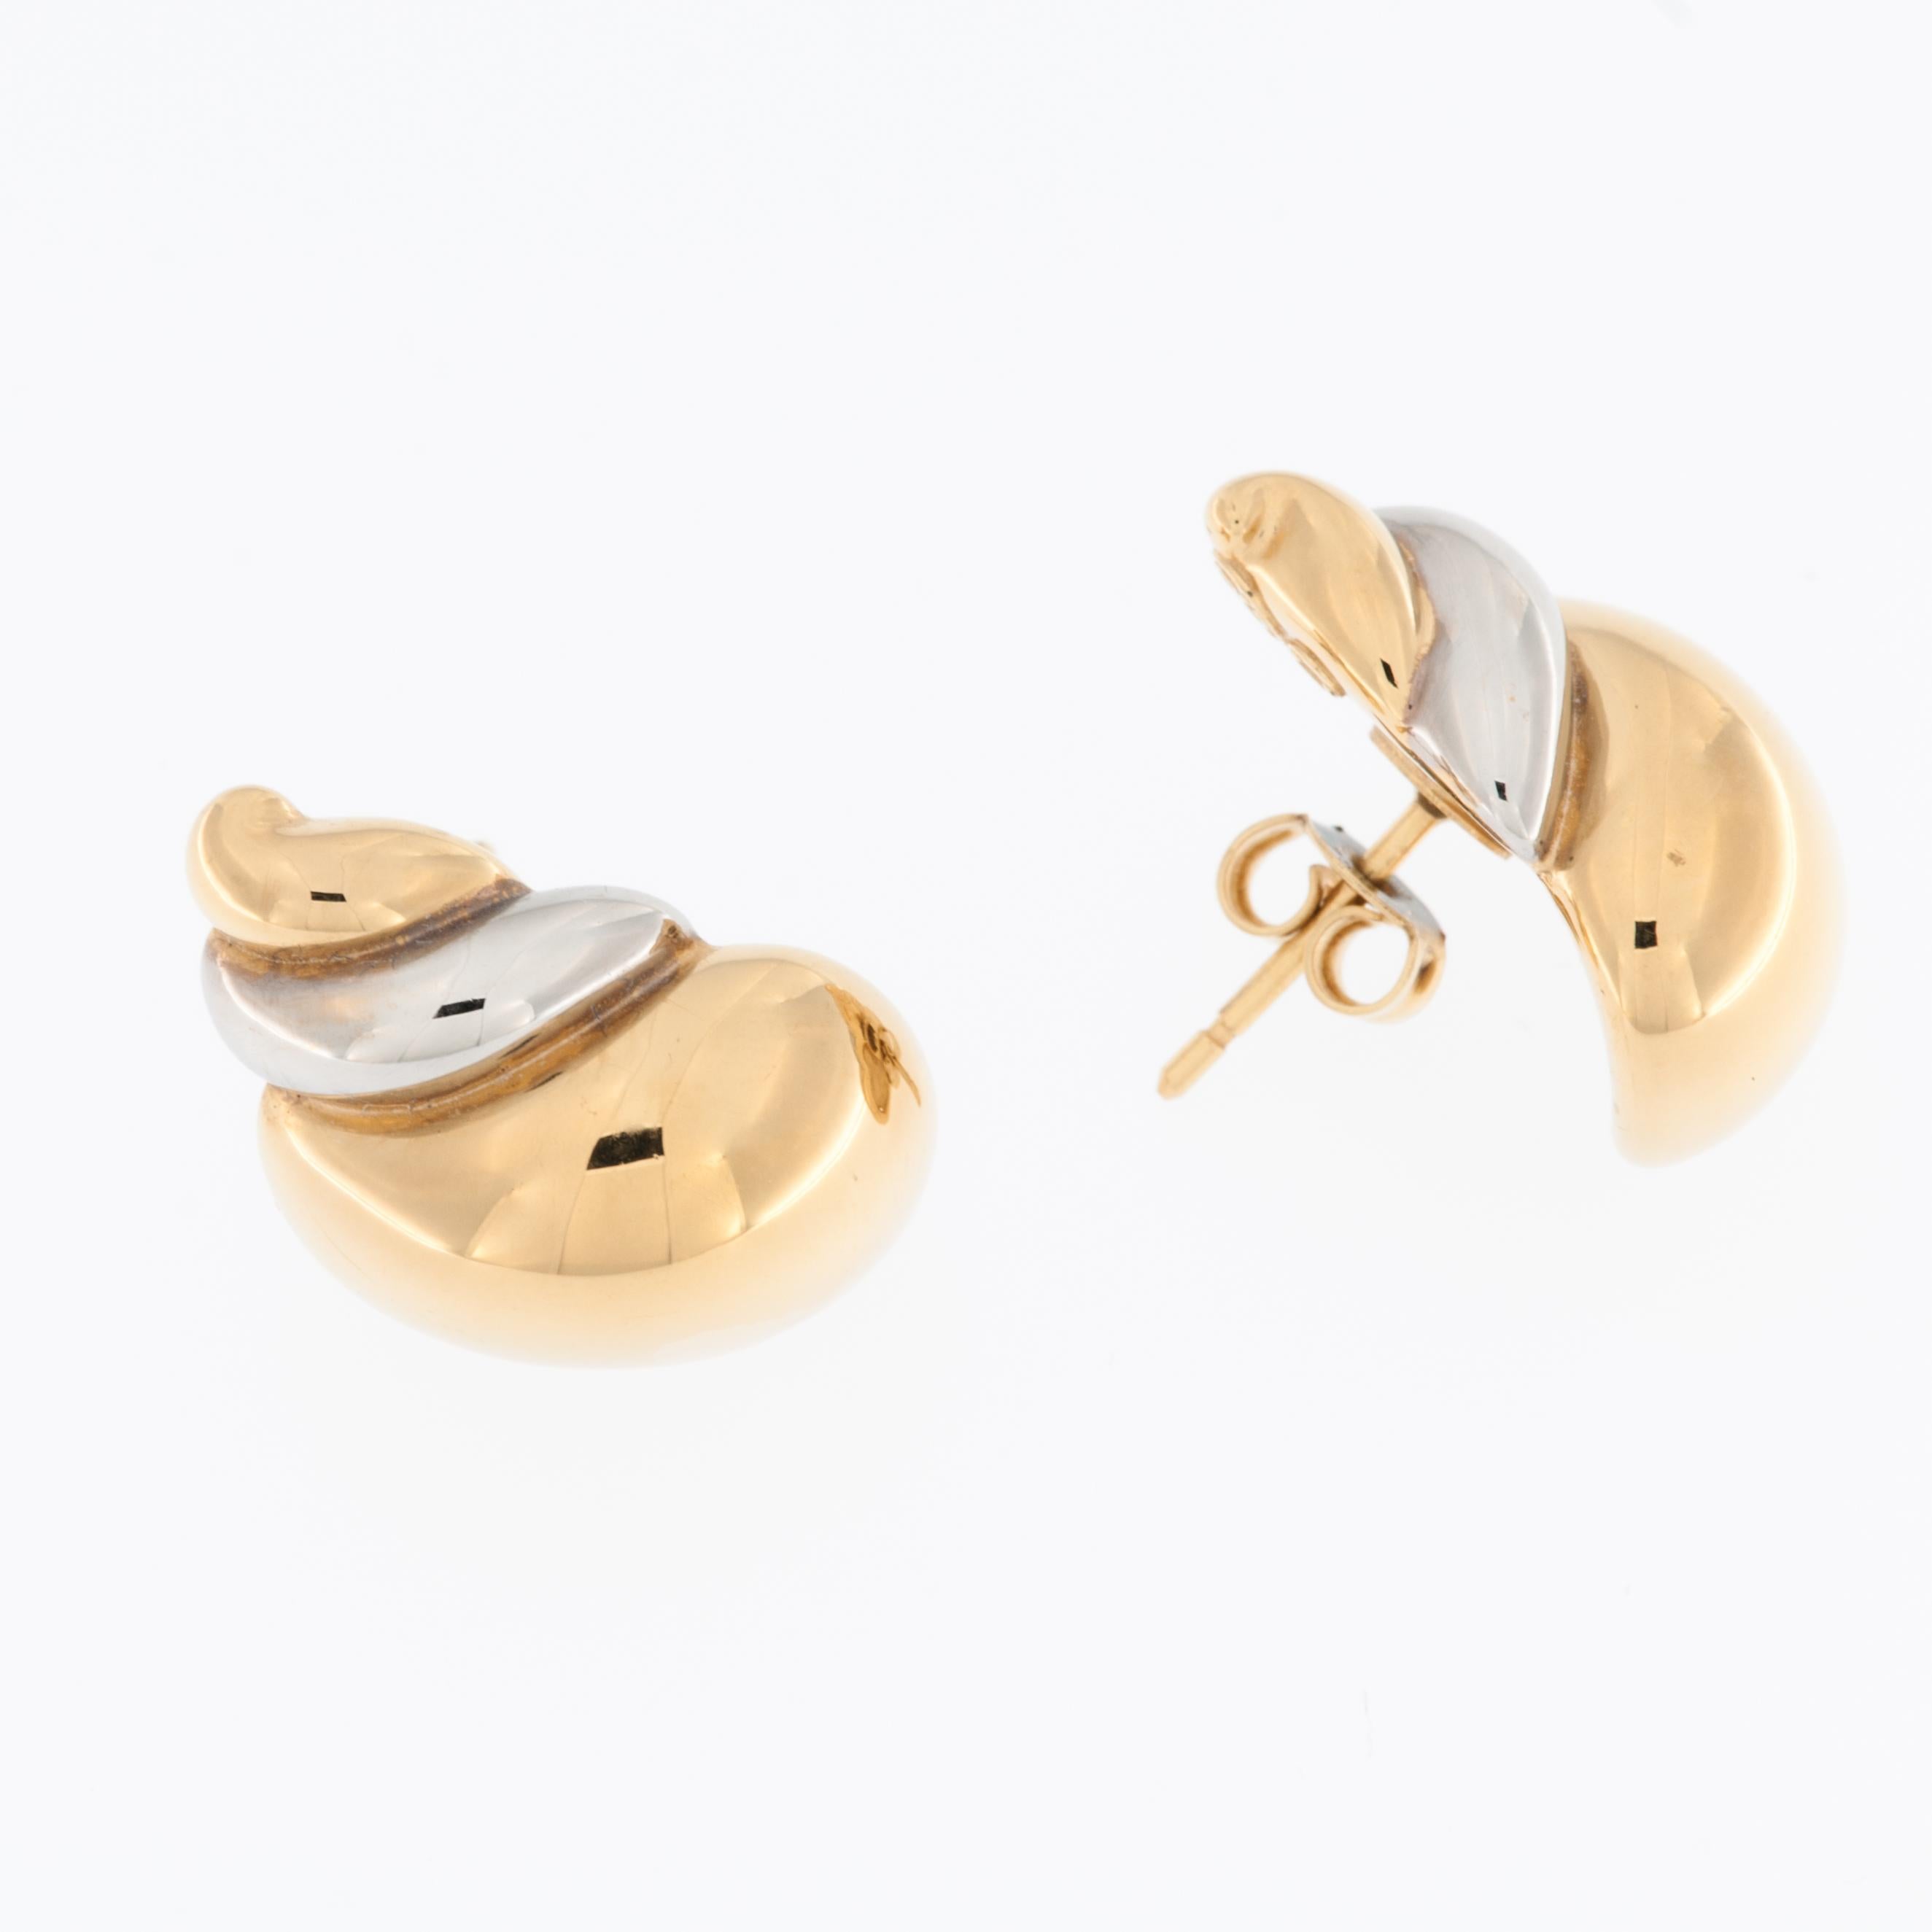 Ces boucles d'oreilles en coquillage italien sont une expression unique et exquise de l'artisanat et du design. Fabriquées à partir d'une combinaison d'or jaune et d'or blanc 18kt, ces boucles d'oreilles présentent un mélange de deux métaux luxueux,